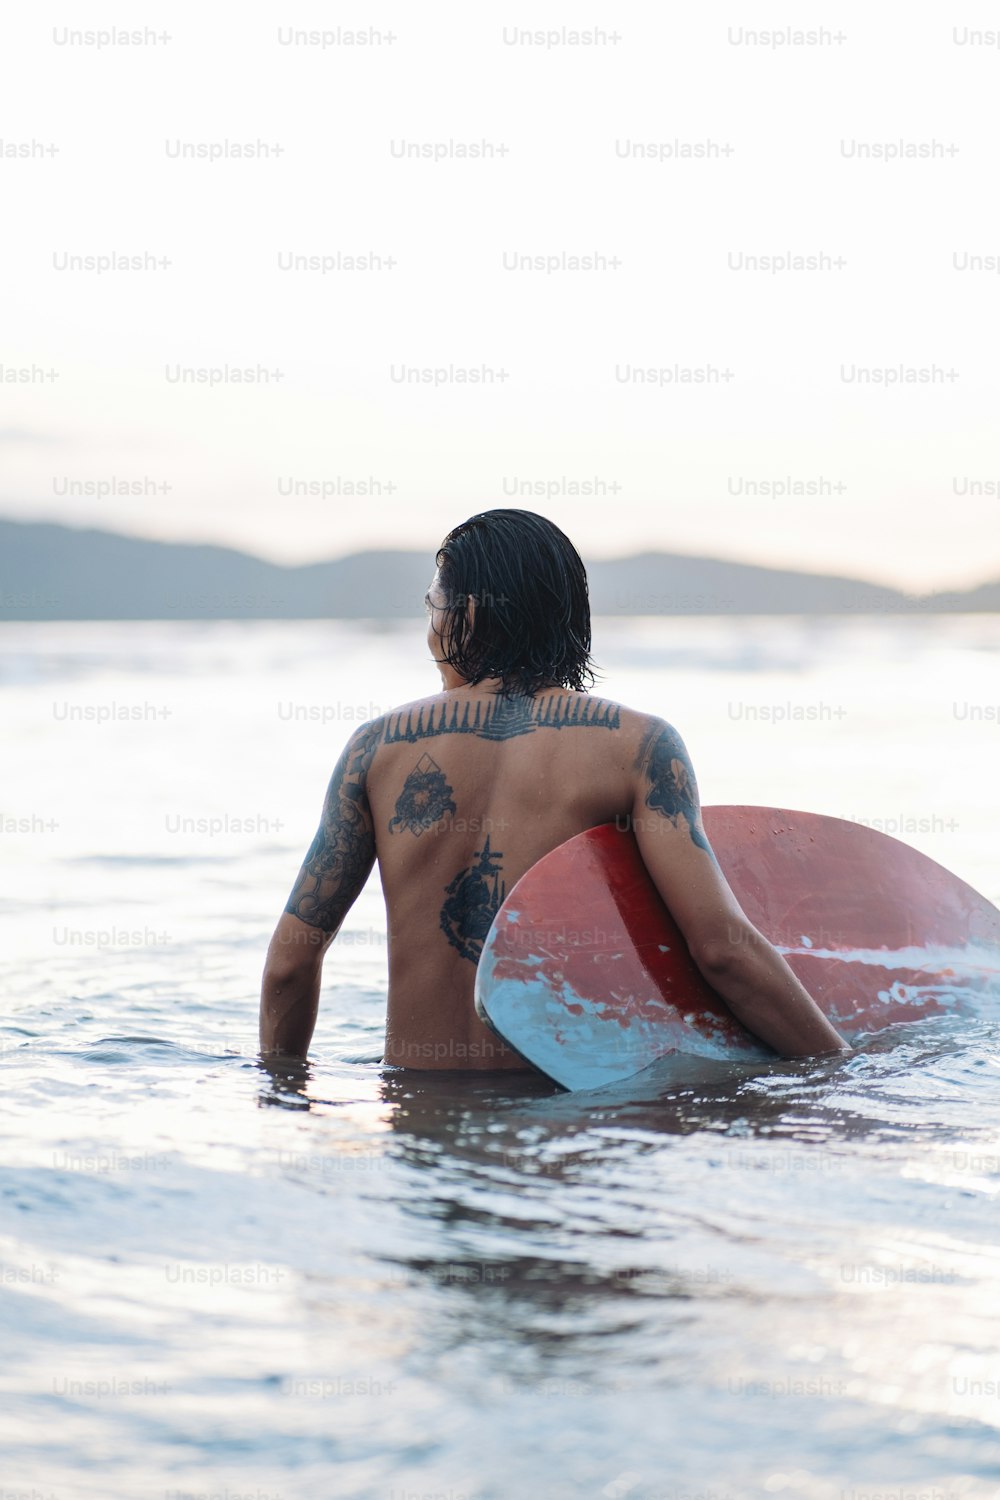 Un hombre sosteniendo una tabla de surf en el agua